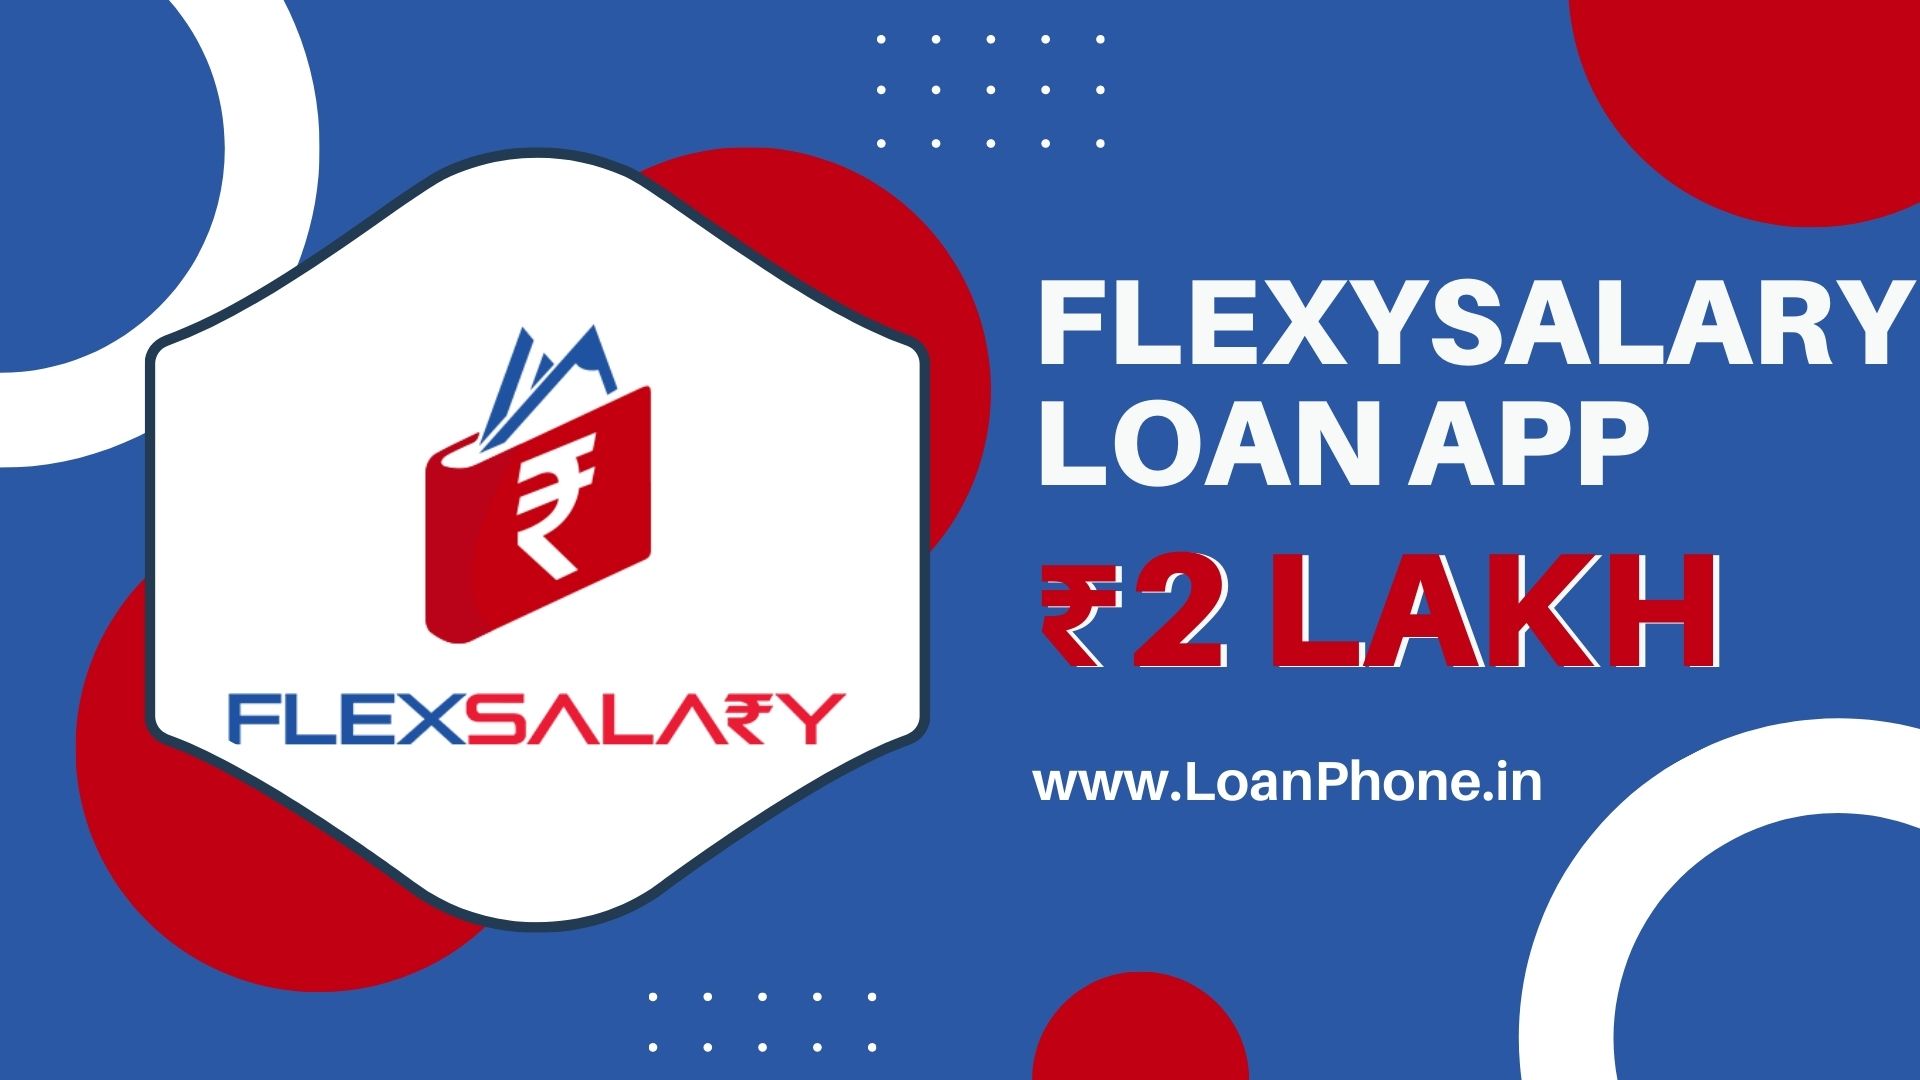 FlexSalary Instant Loan App से कितने तक का लोन मिल सकता है?